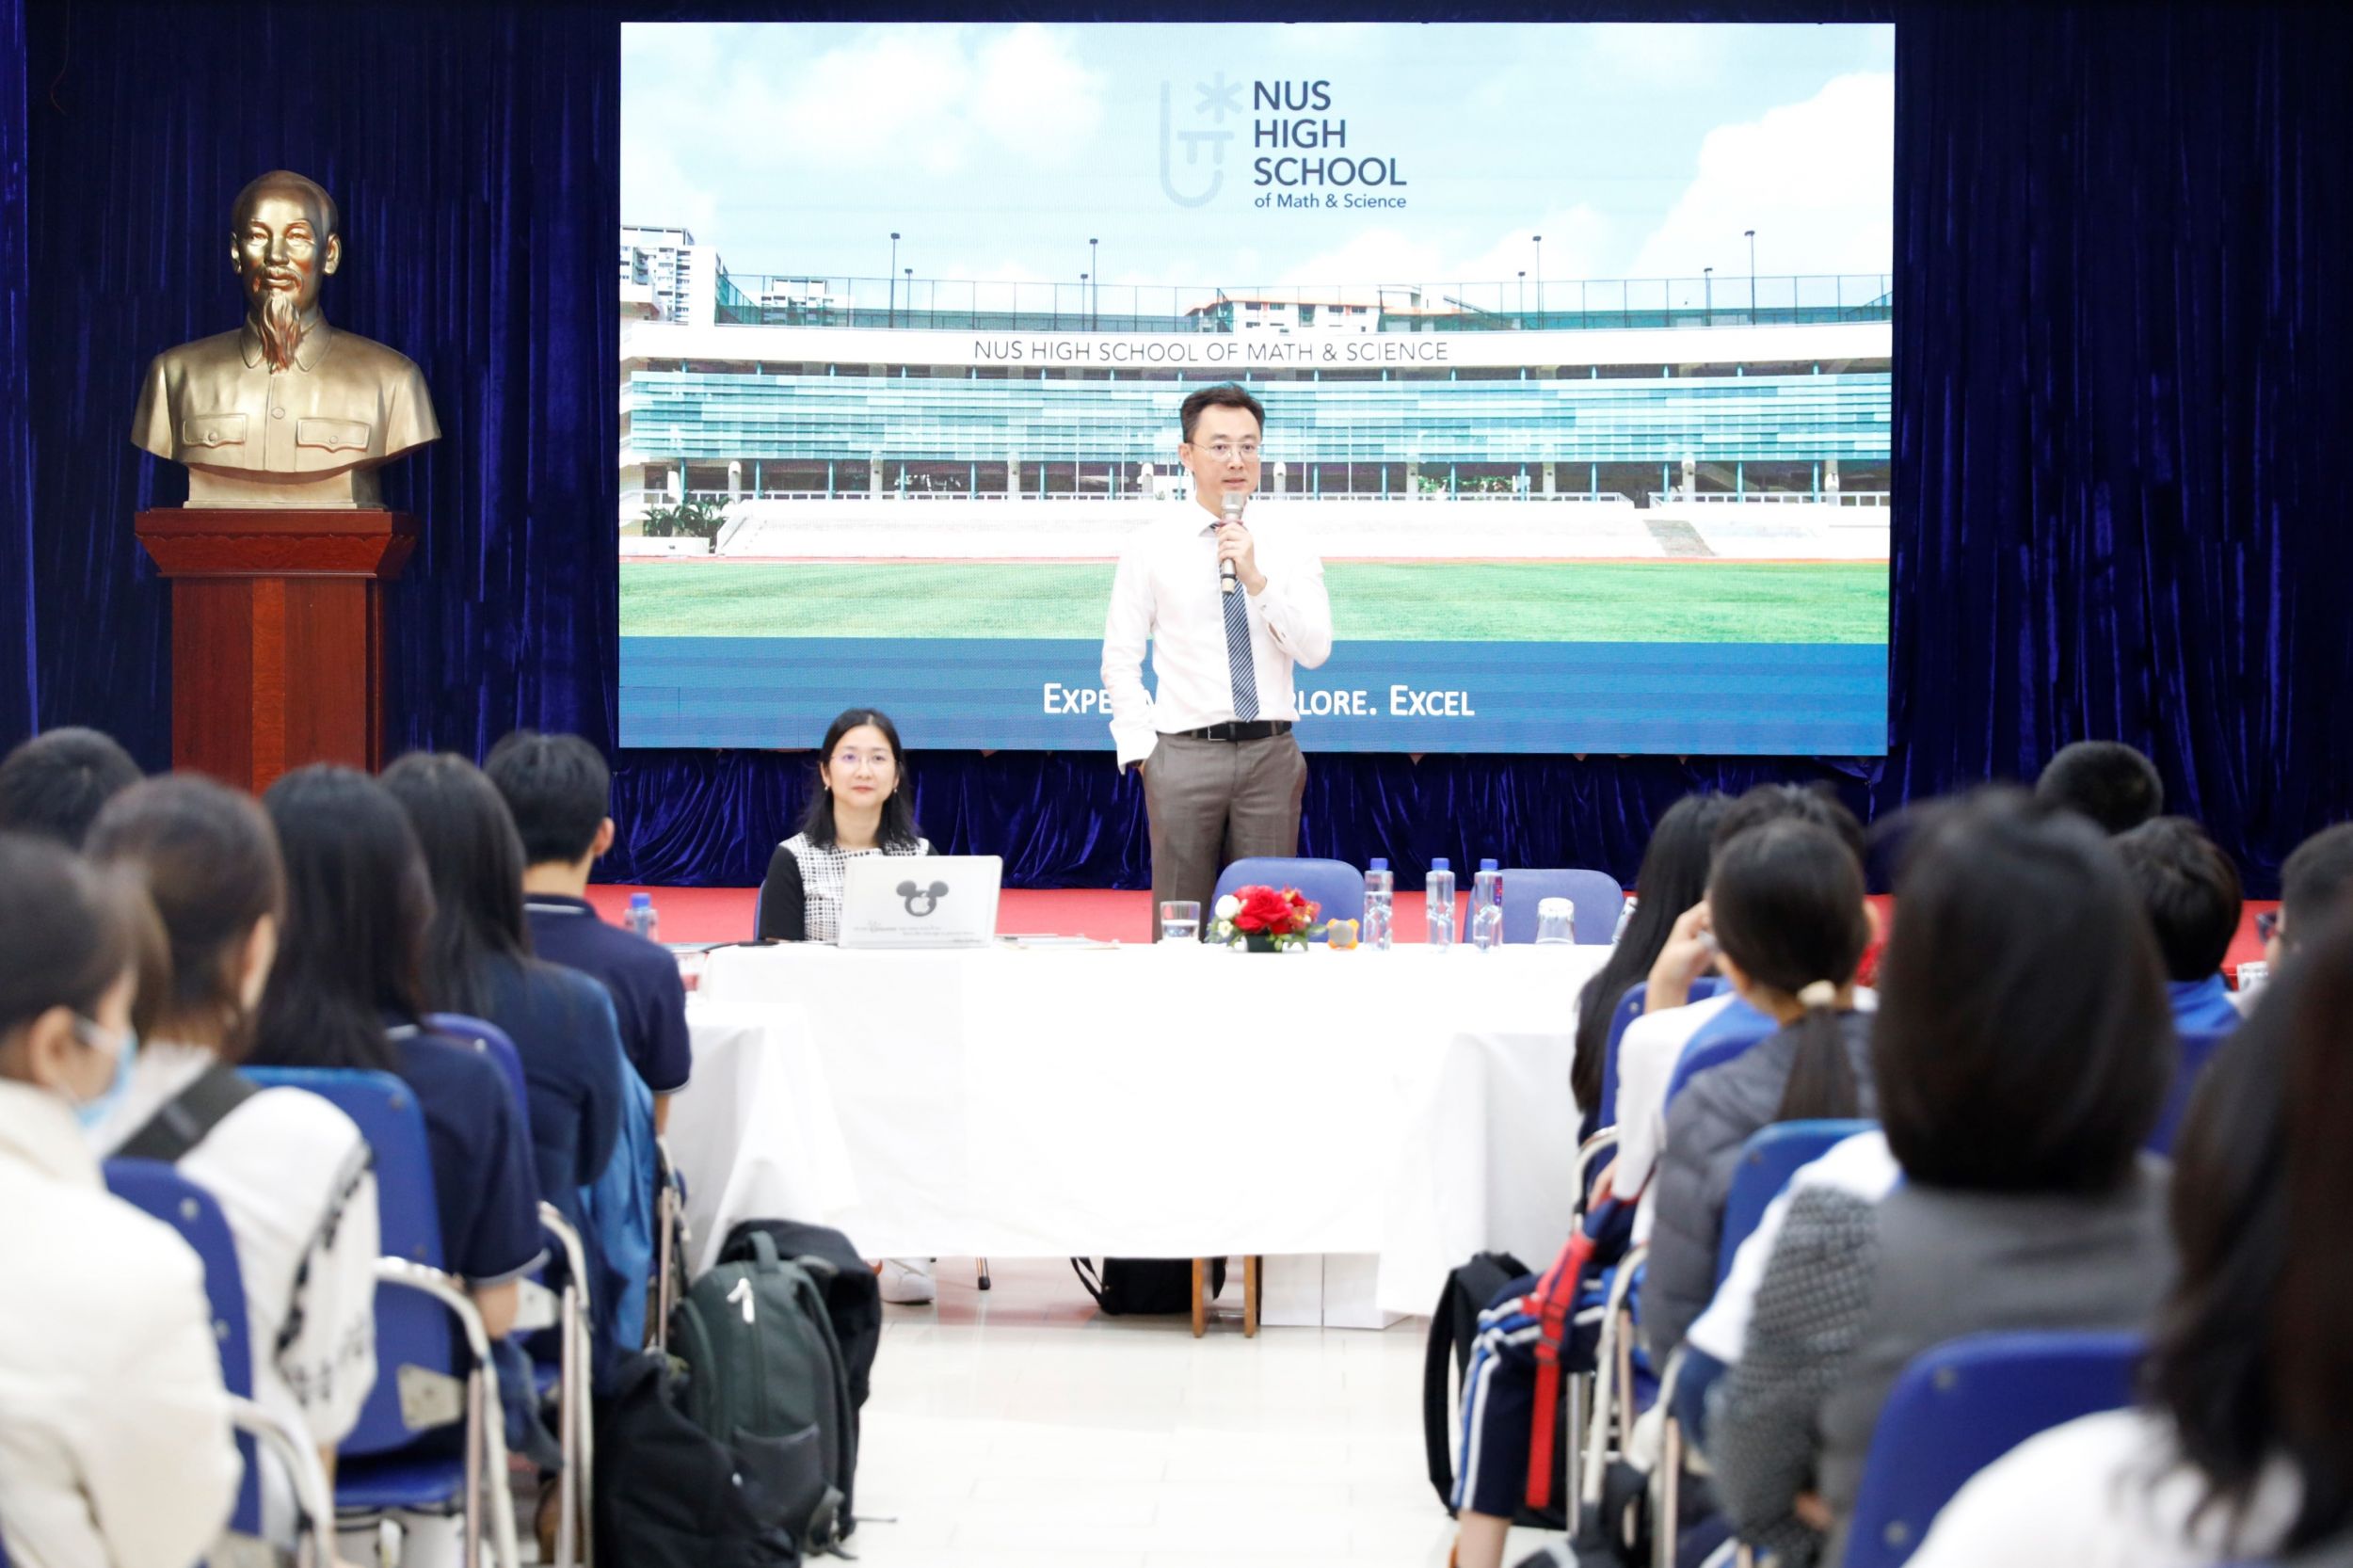 [Hội thảo] Học sinh Archimedes School và cơ hội chinh phục ước mơ du học Singapore với Học bổng toàn phần của Trường THPT Chuyên Toán và Khoa học, Đại học Quốc gia Singapore (NUSH).